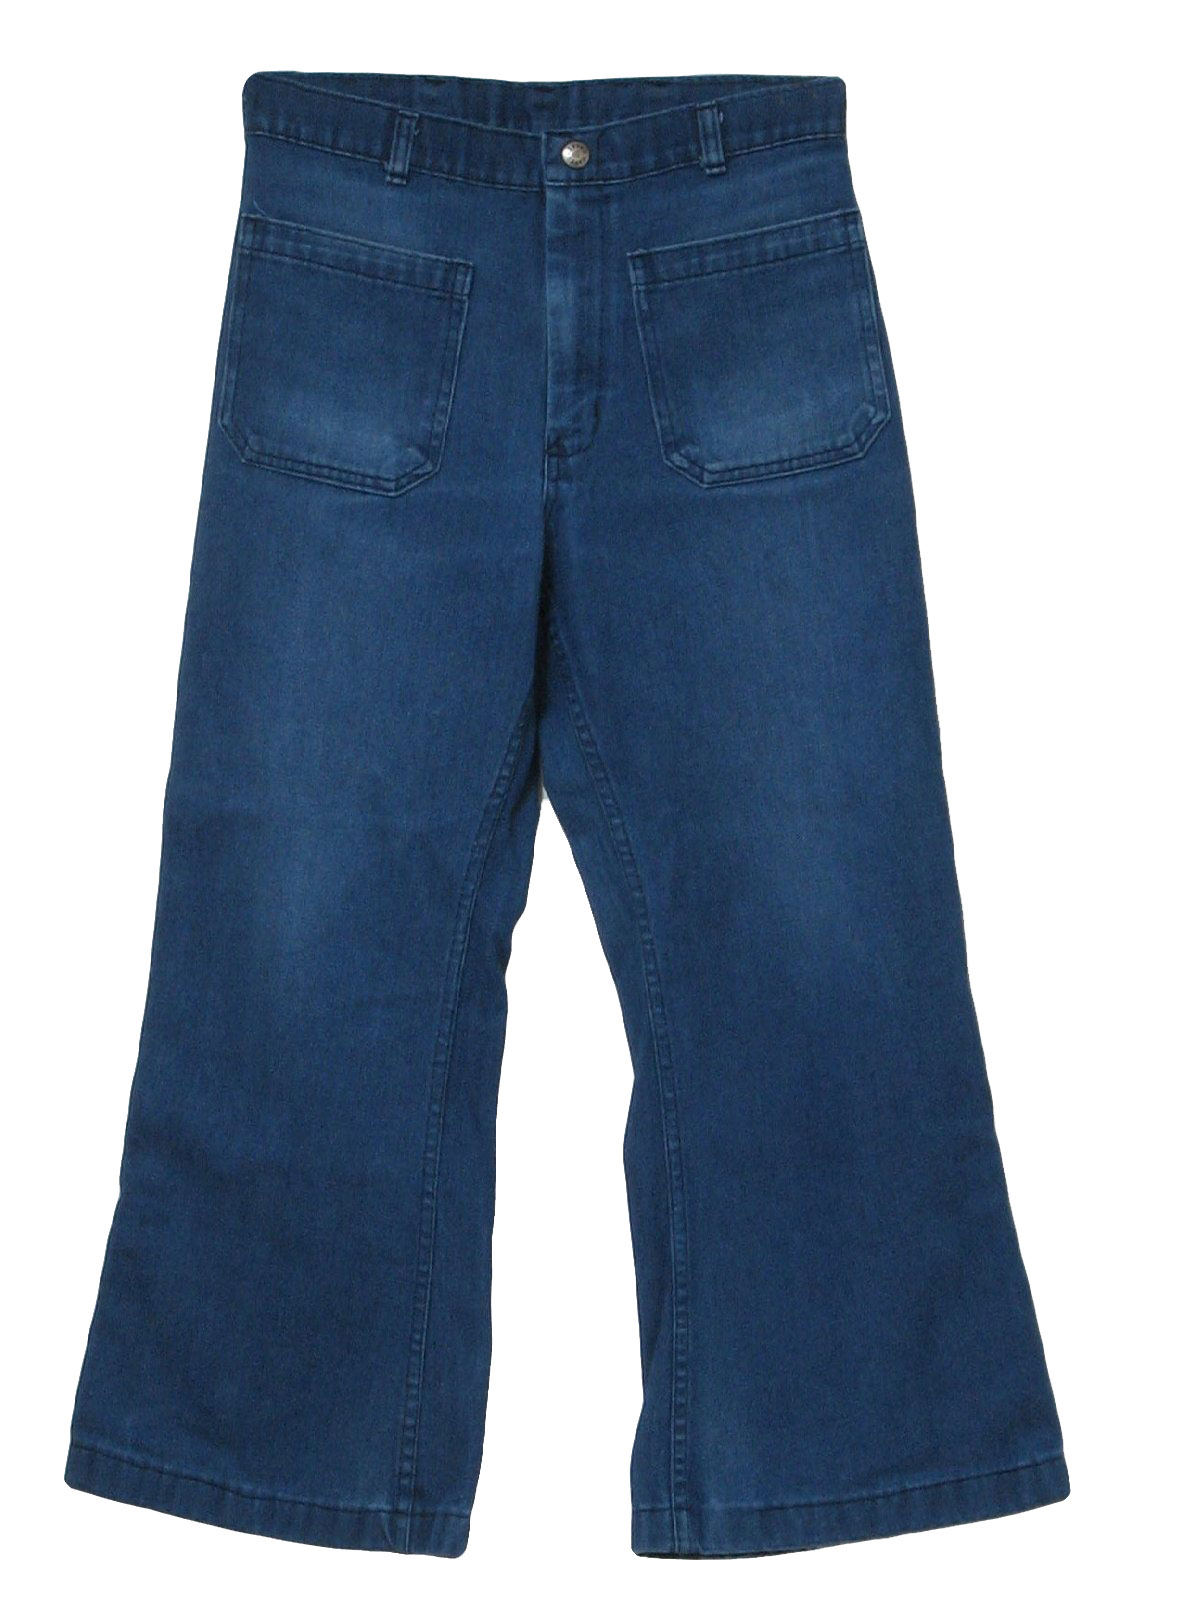 Navdungaree Seventies Vintage Bellbottom Pants: 70s style (made in